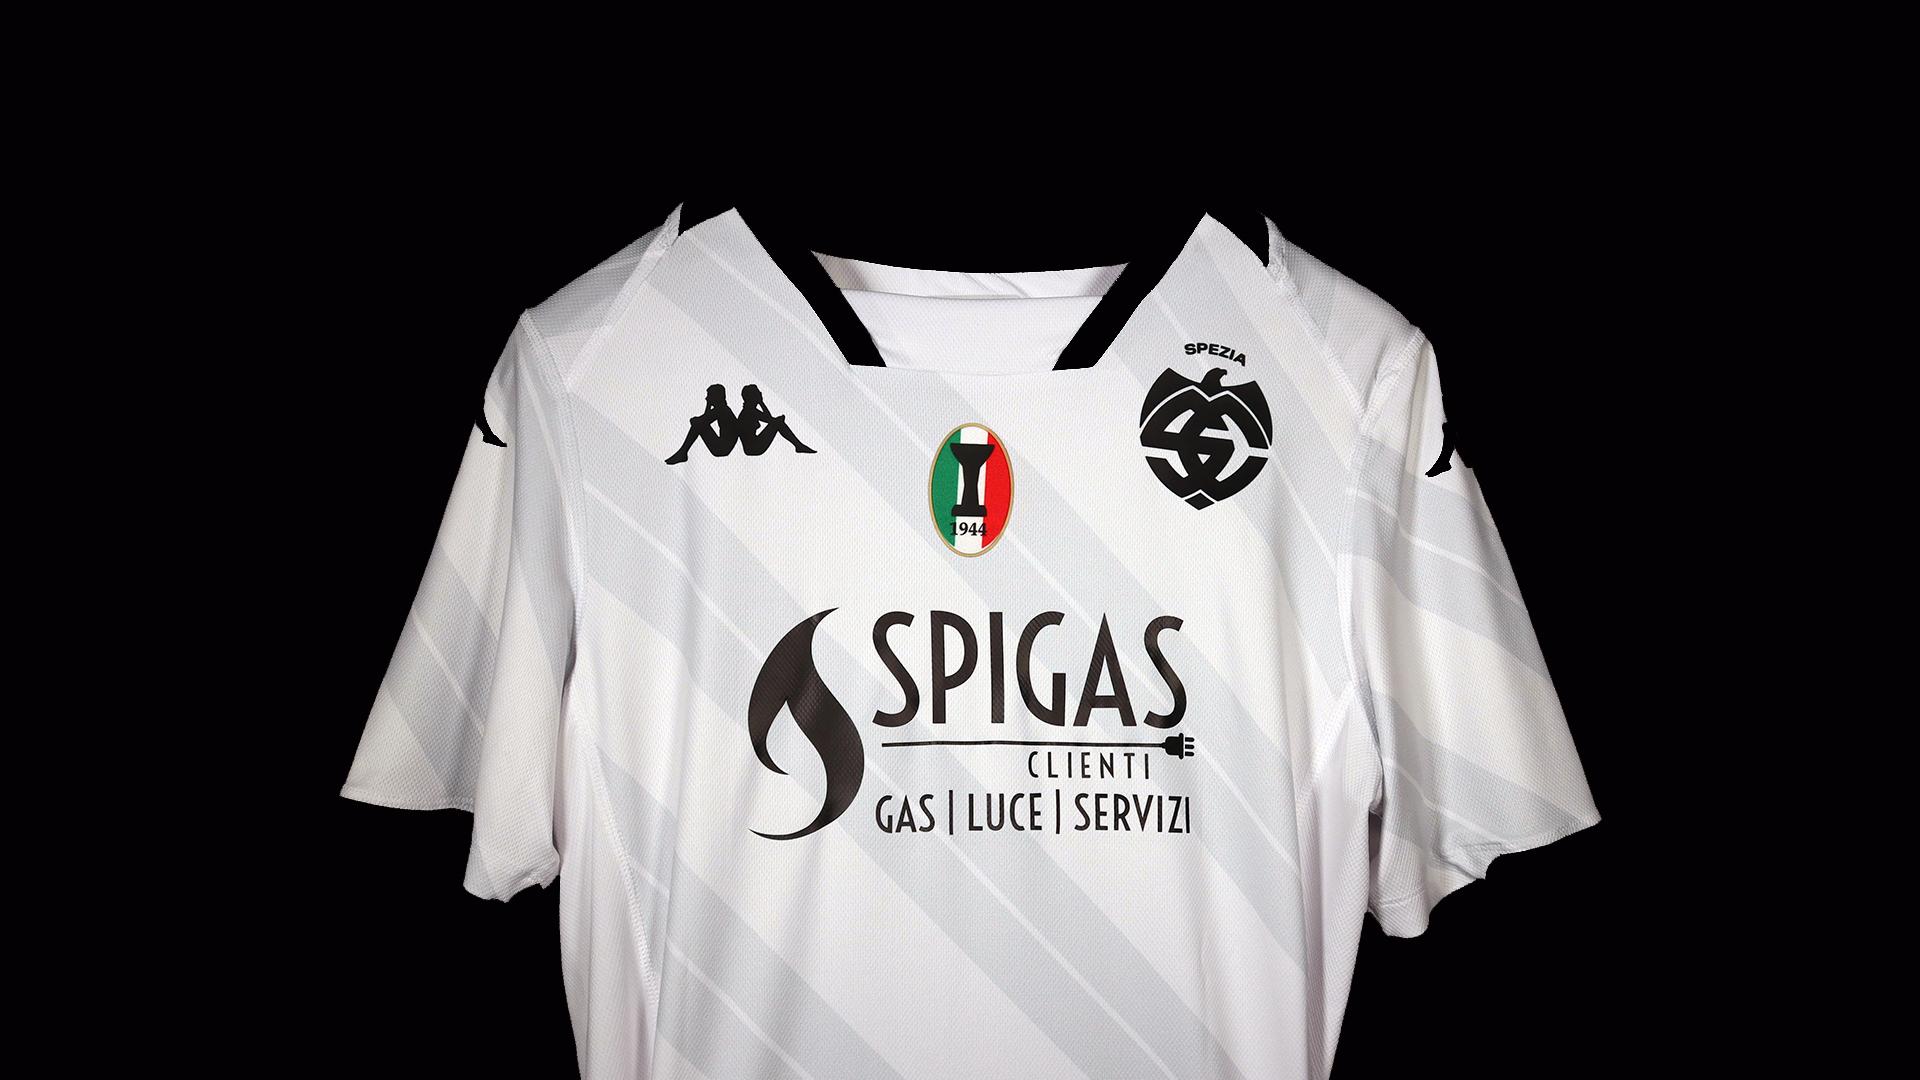 Spigas Clienti è il nuovo Main Sponsor dello Spezia Calcio